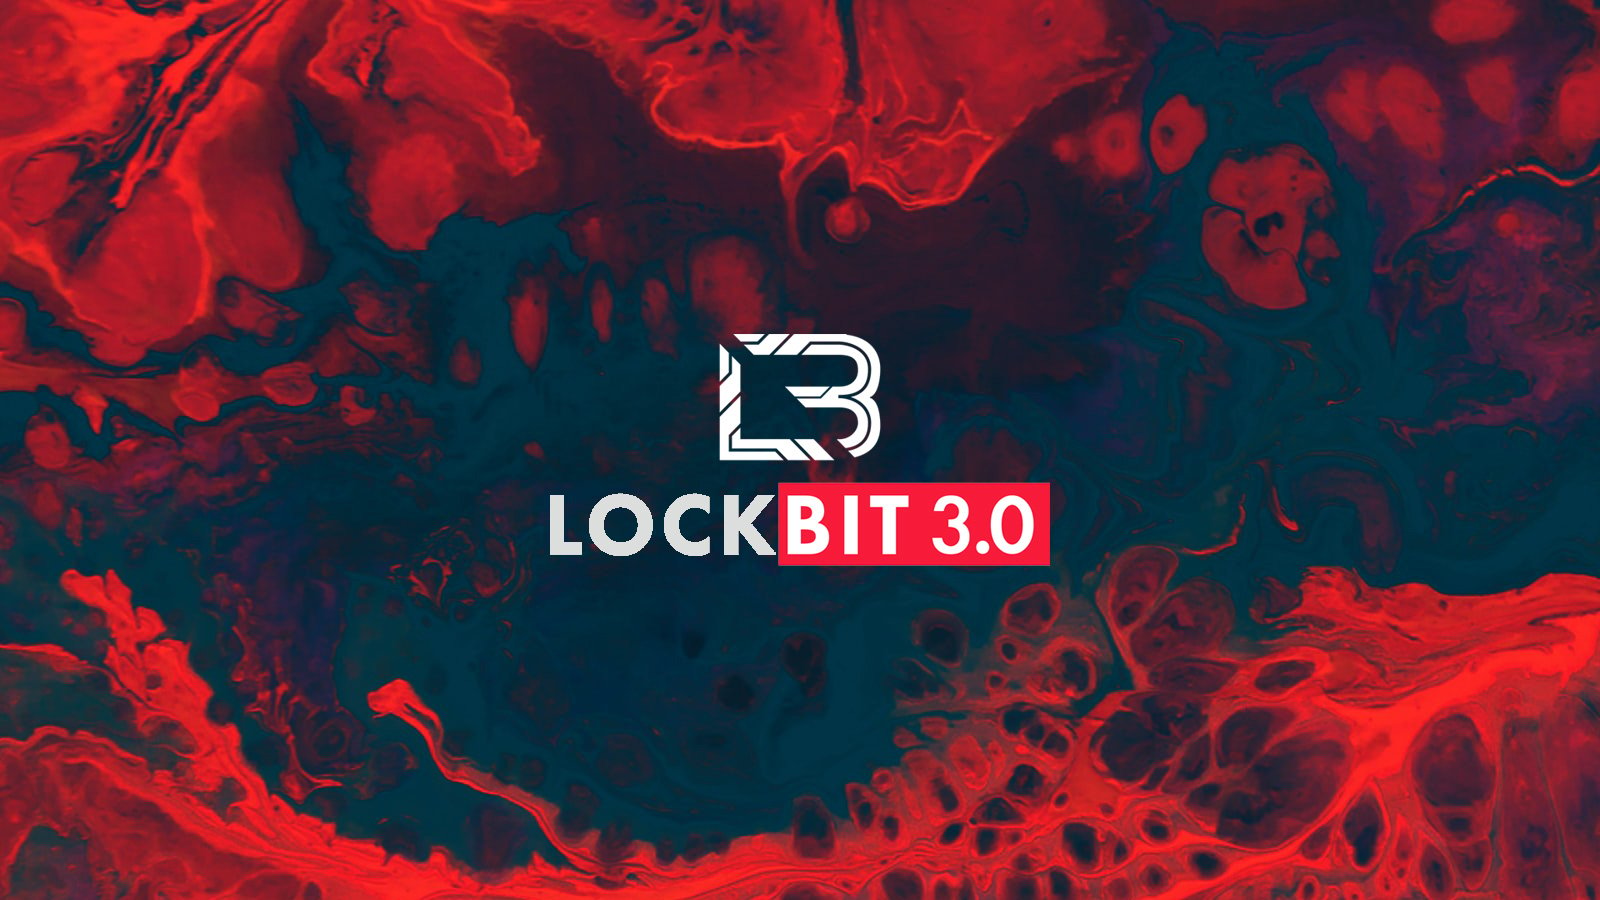 LockBit fidye yazılımı çetesi, bir gasp taktiği olarak DDoS eklemeyi planlıyor